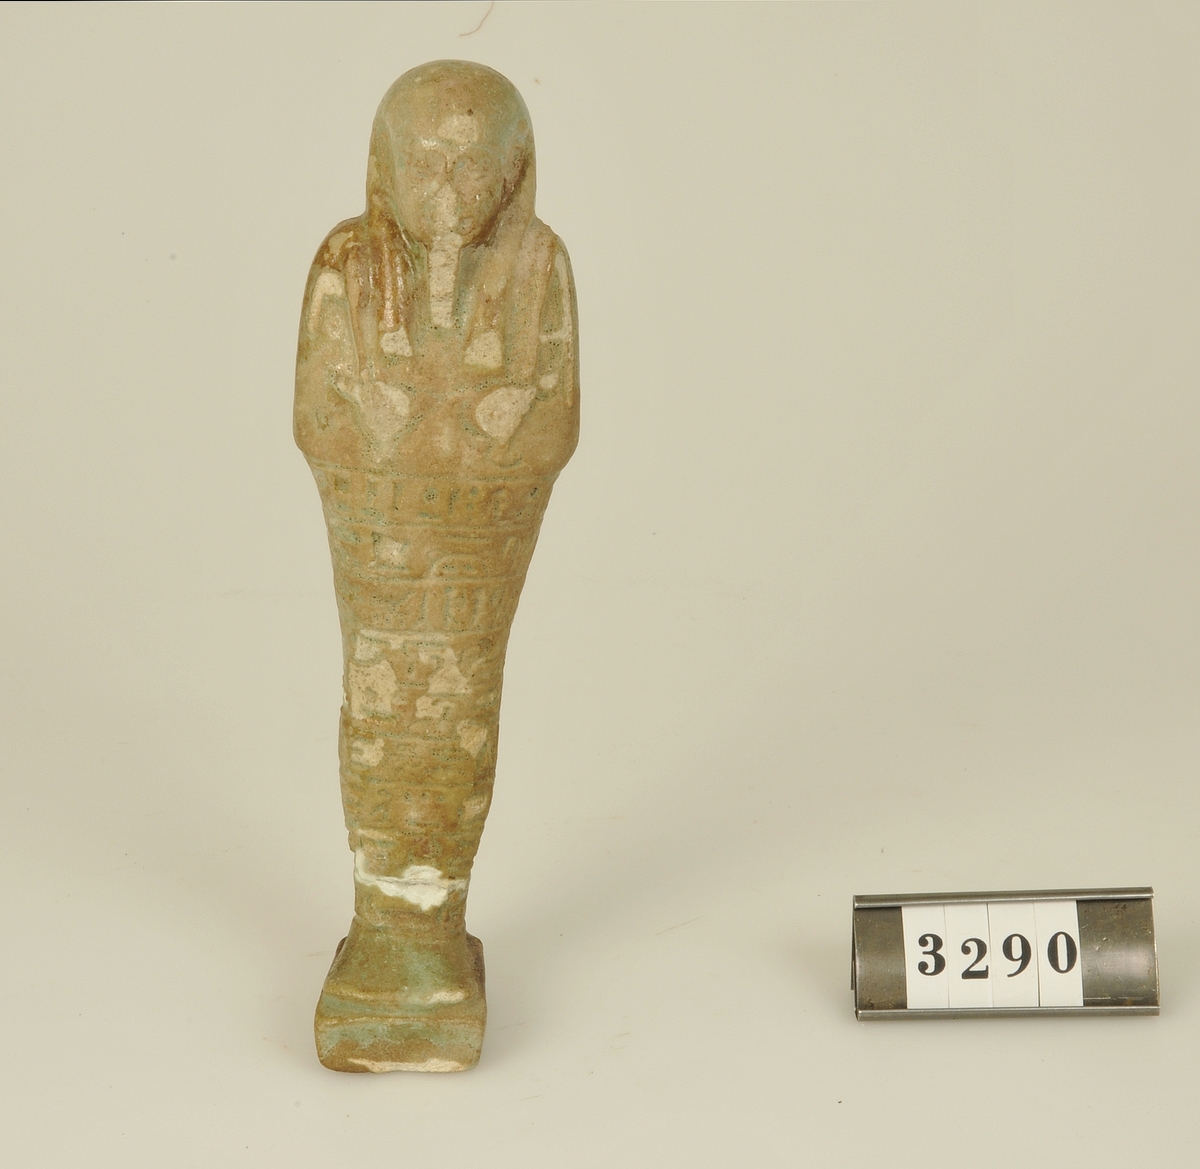 Av fajans med grönaktig glasyr.
Nedre delen av figuren täckt med hieroglyfer.

Har tillhört de Adelsköldska samlingarna.
